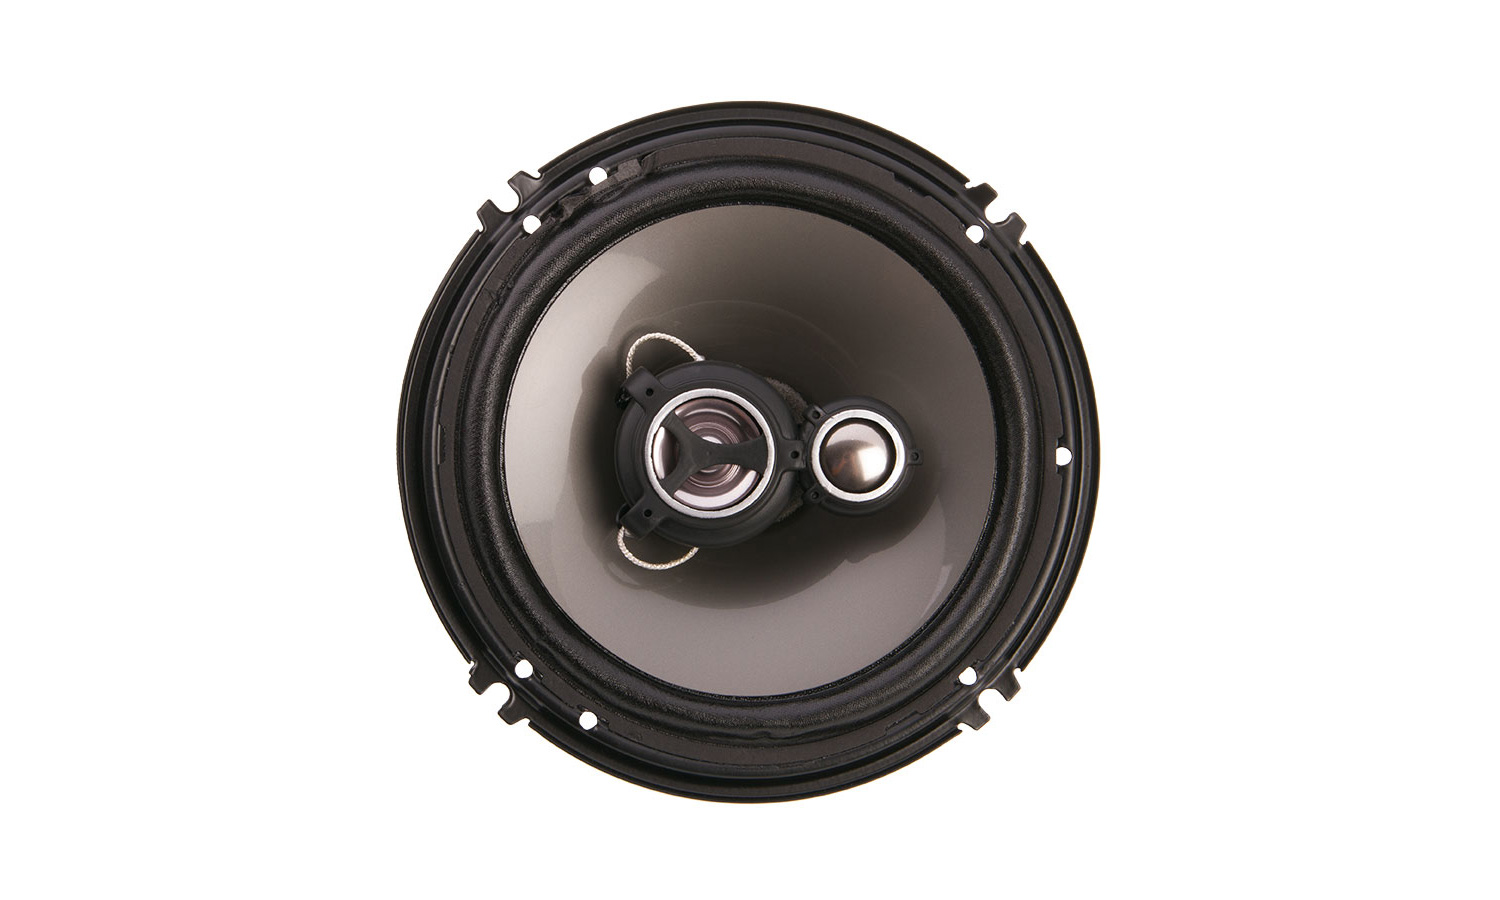 AF.653
Arachnid Series 6.5inch 3-Way Speaker, 100w RMS, 4-ohm